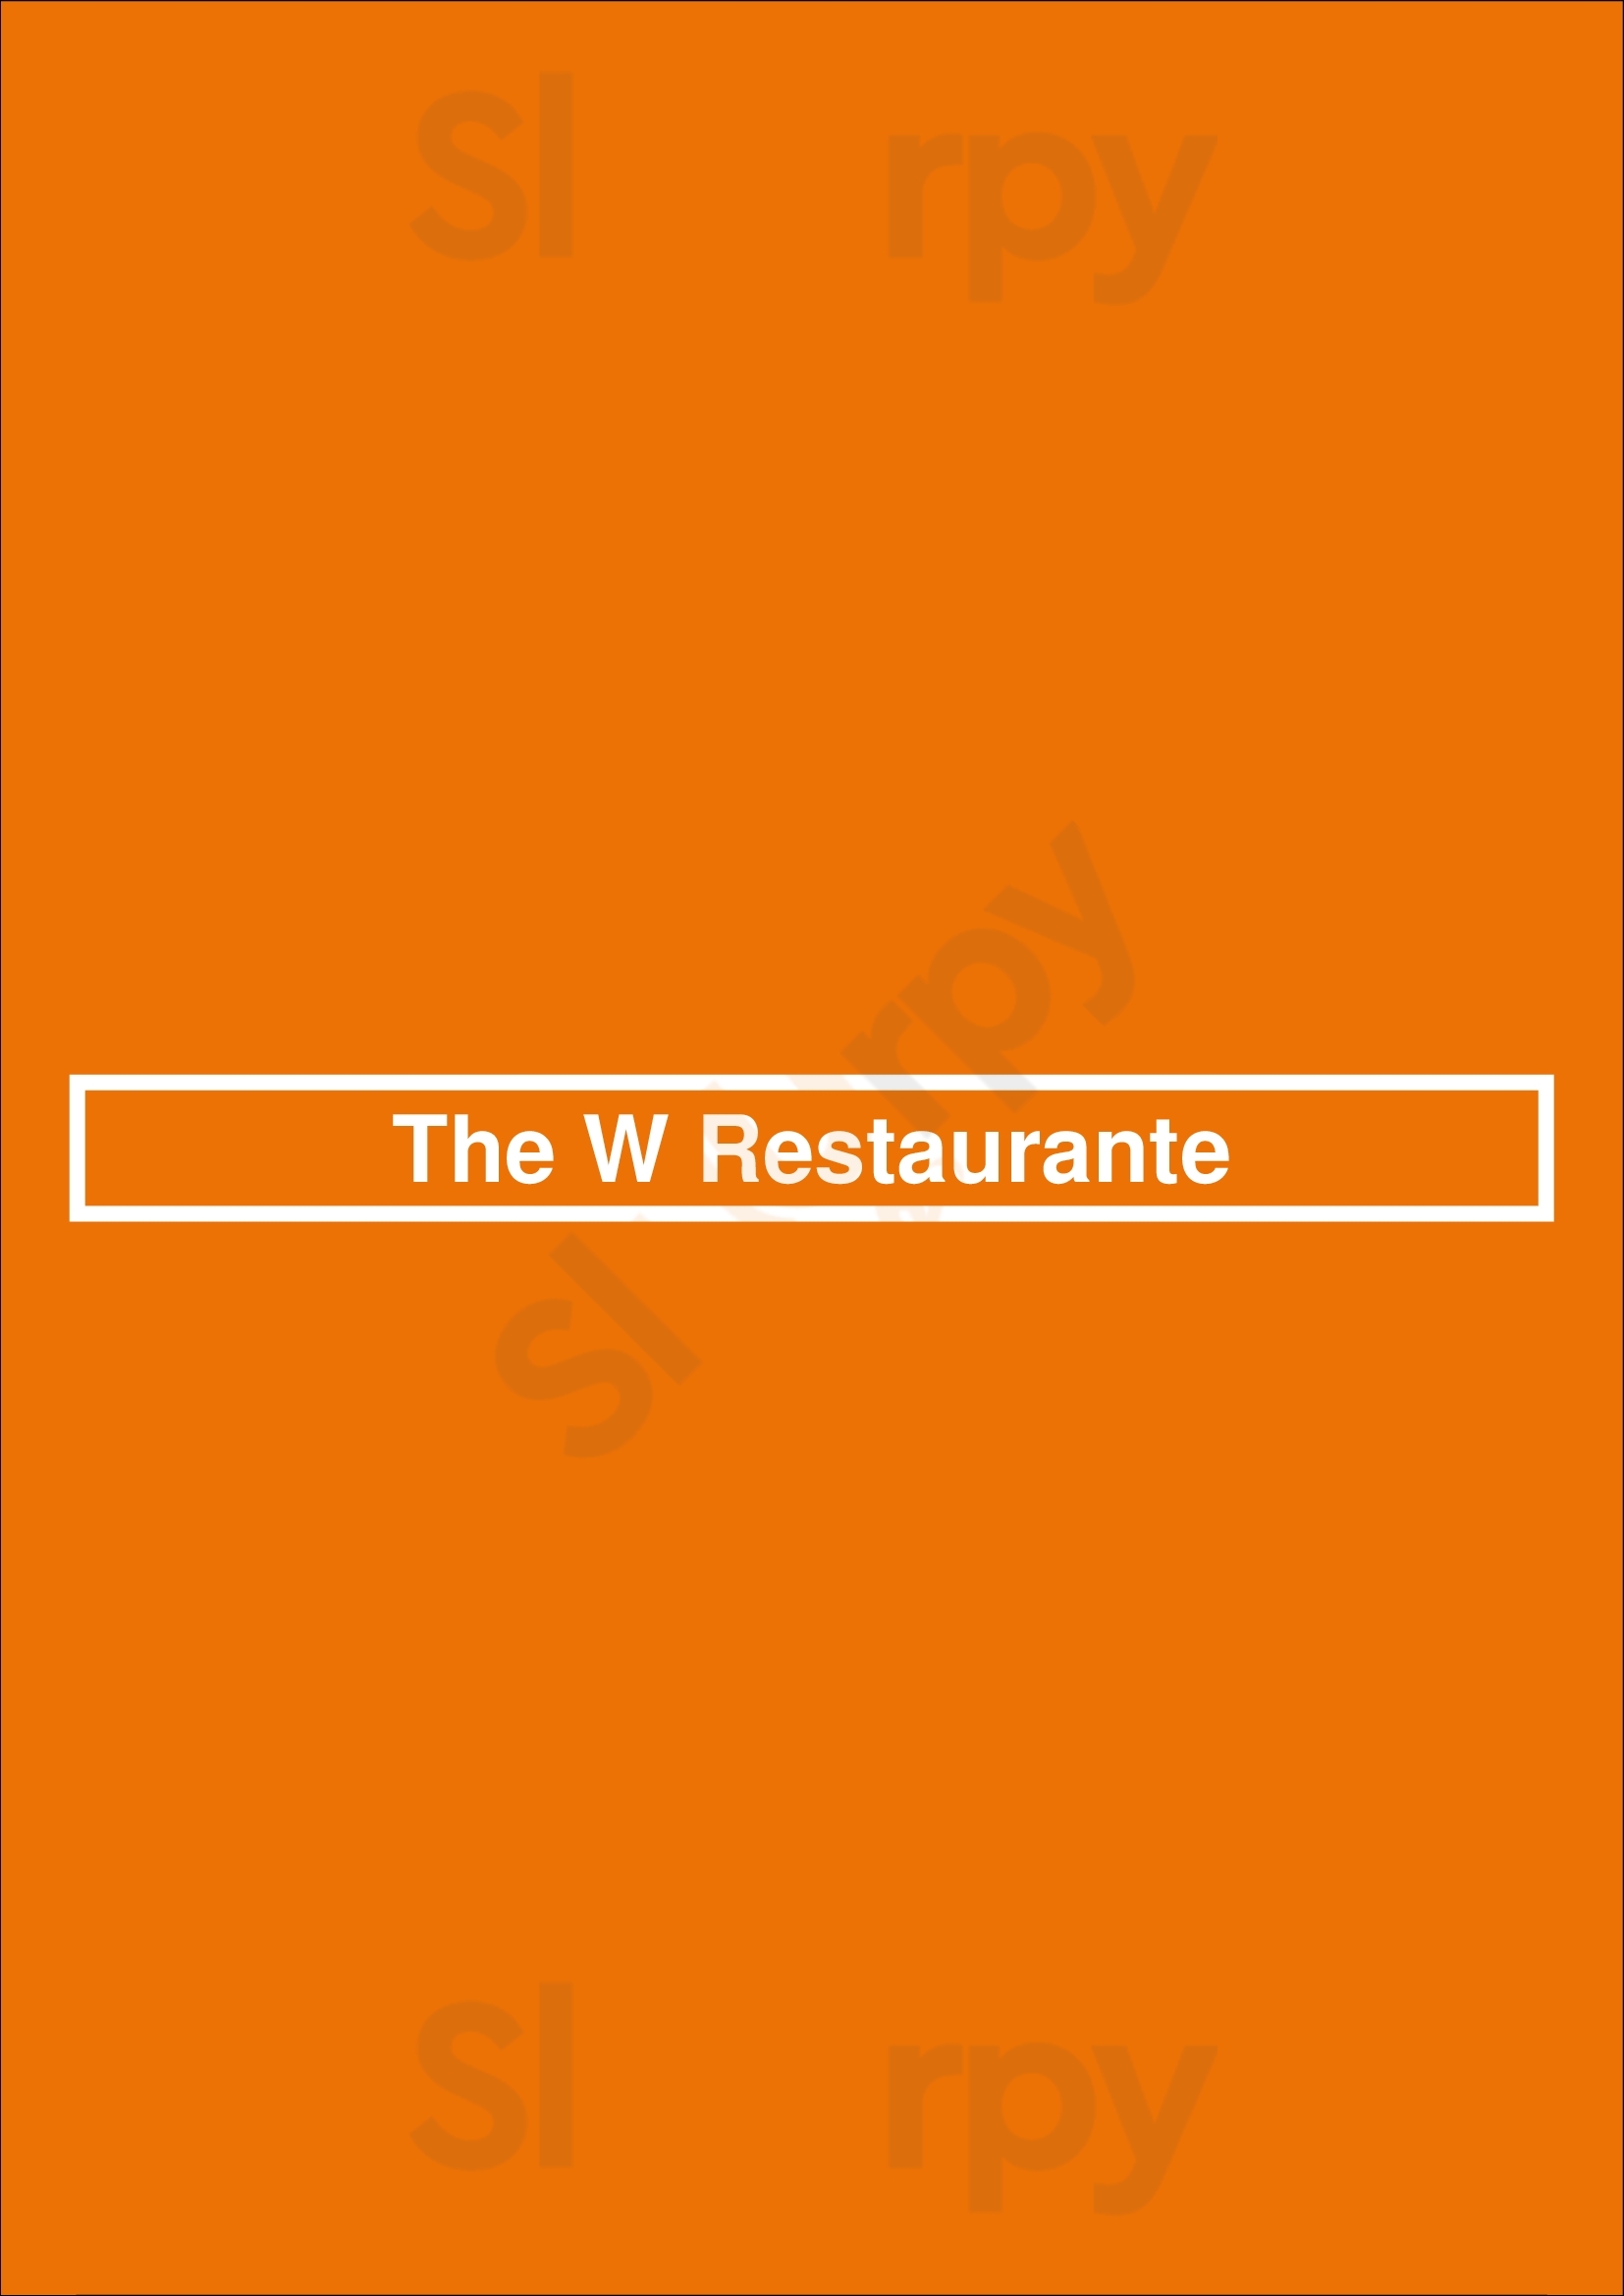 The W Restaurante João Pessoa Menu - 1